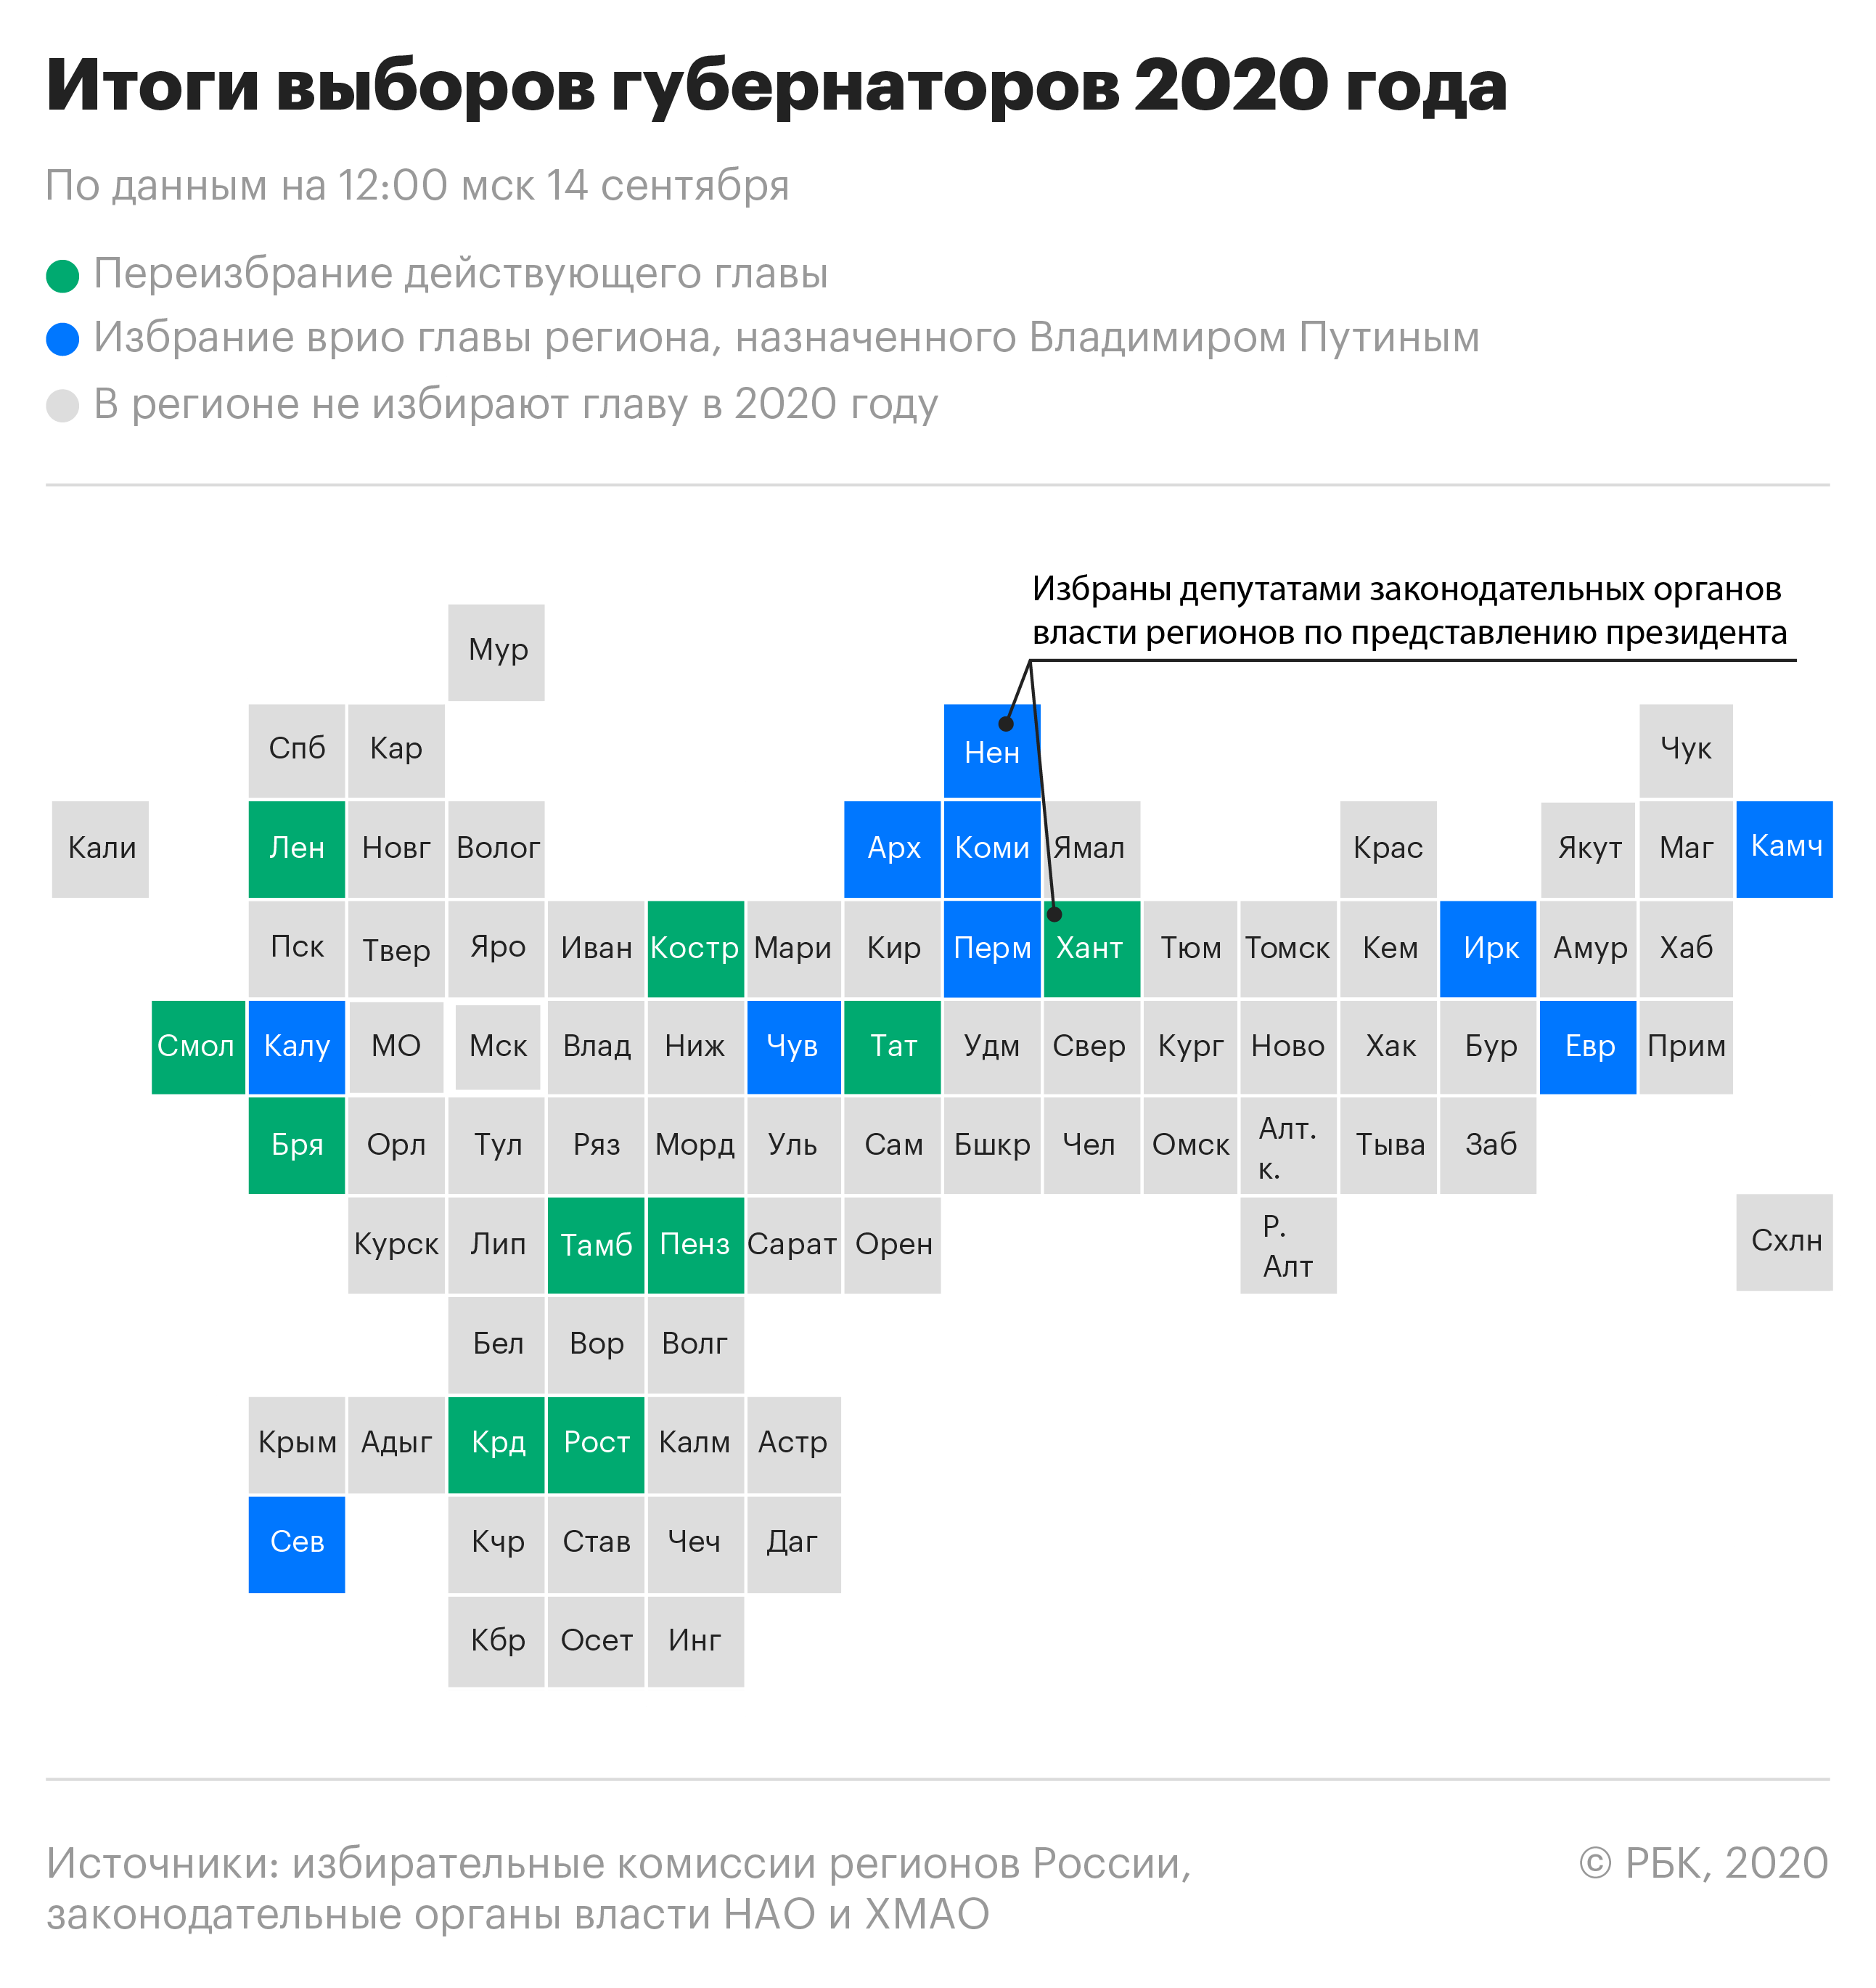 Рекорд губернаторов и сторонники Навального в гордумах Сибири